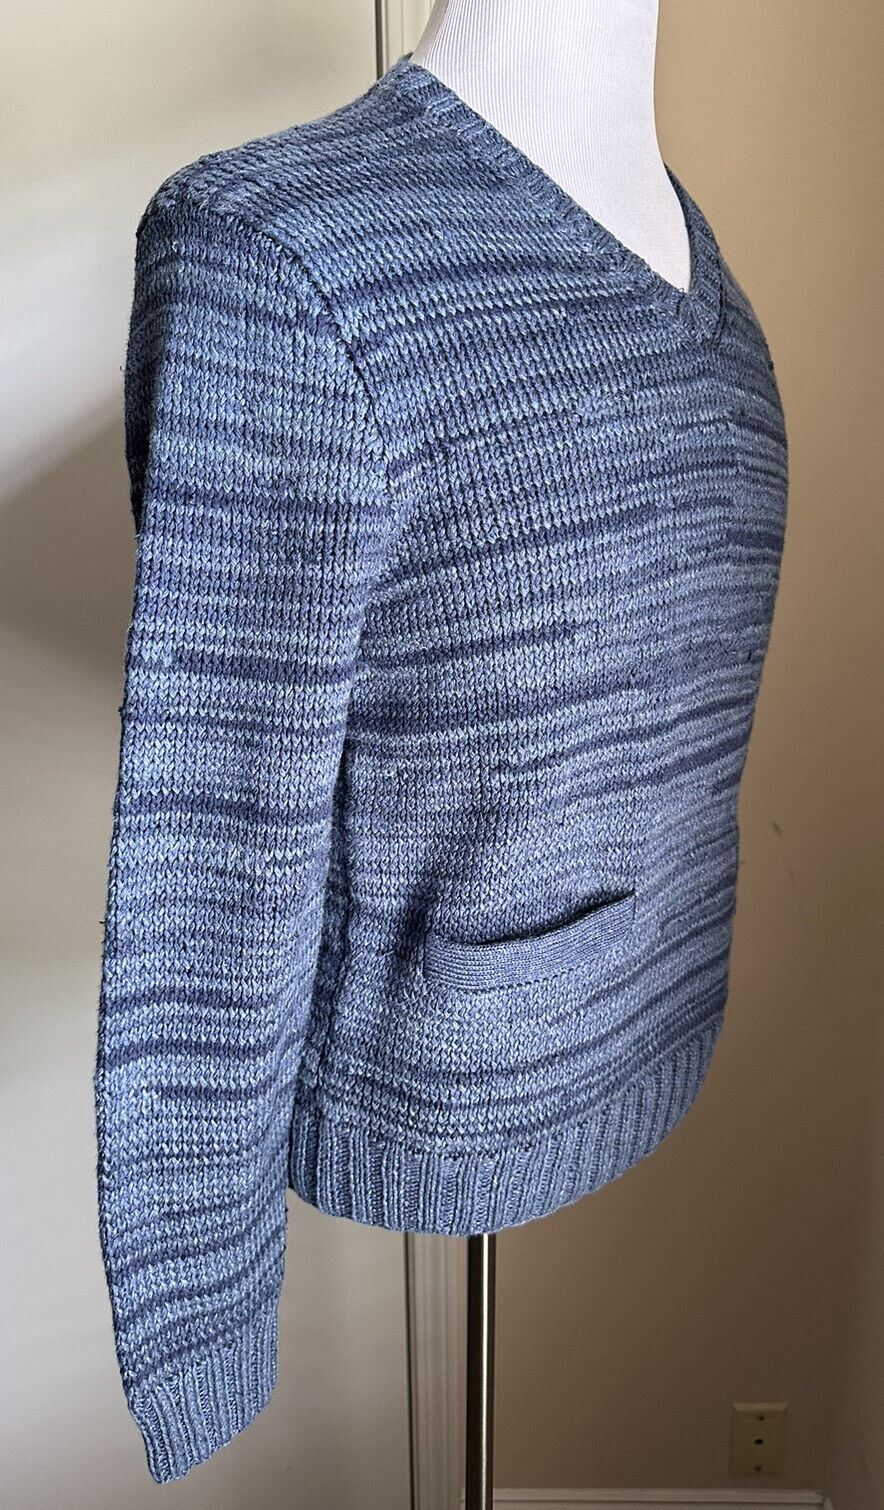 Neu mit Etikett: 1295 $ Ralph Lauren Purple Label Handgestrickter Herrenpullover mit V-Ausschnitt Blau M